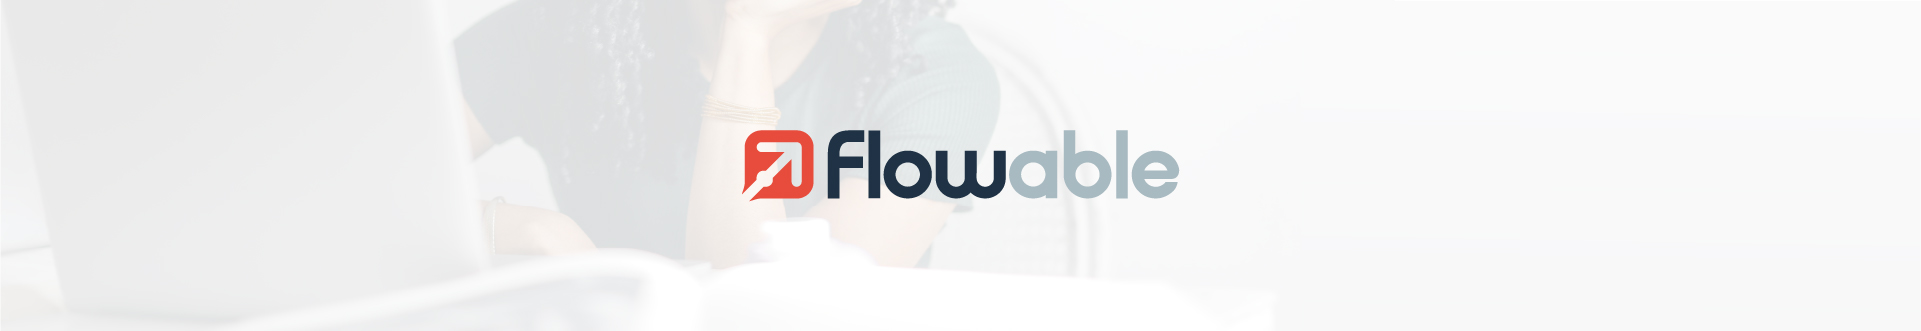 Blog-Flowable-header